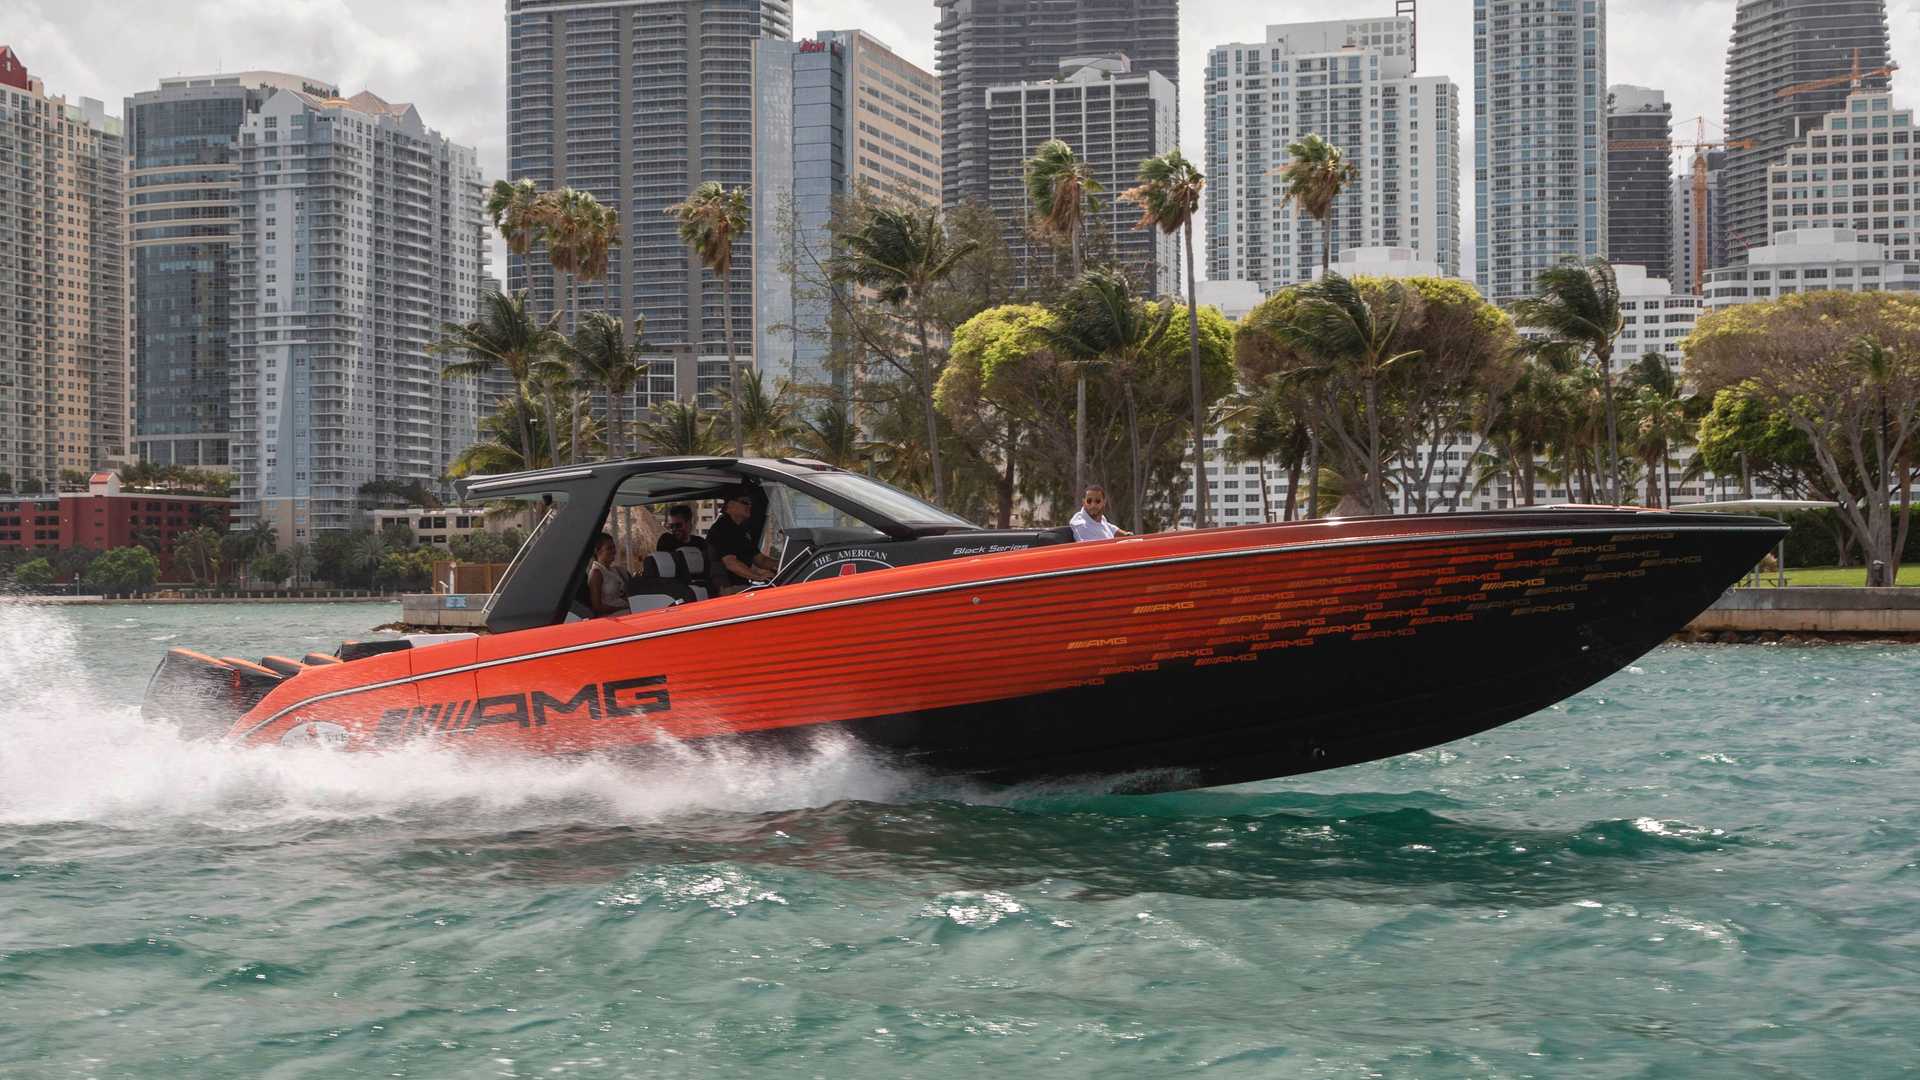 نمای قایق پرسرعت مرسدس آ ام گ نایت هاوک سری سیاه / Mercedes-AMG Black Series Cigarette Boat نارنجی و سیاه رنگ